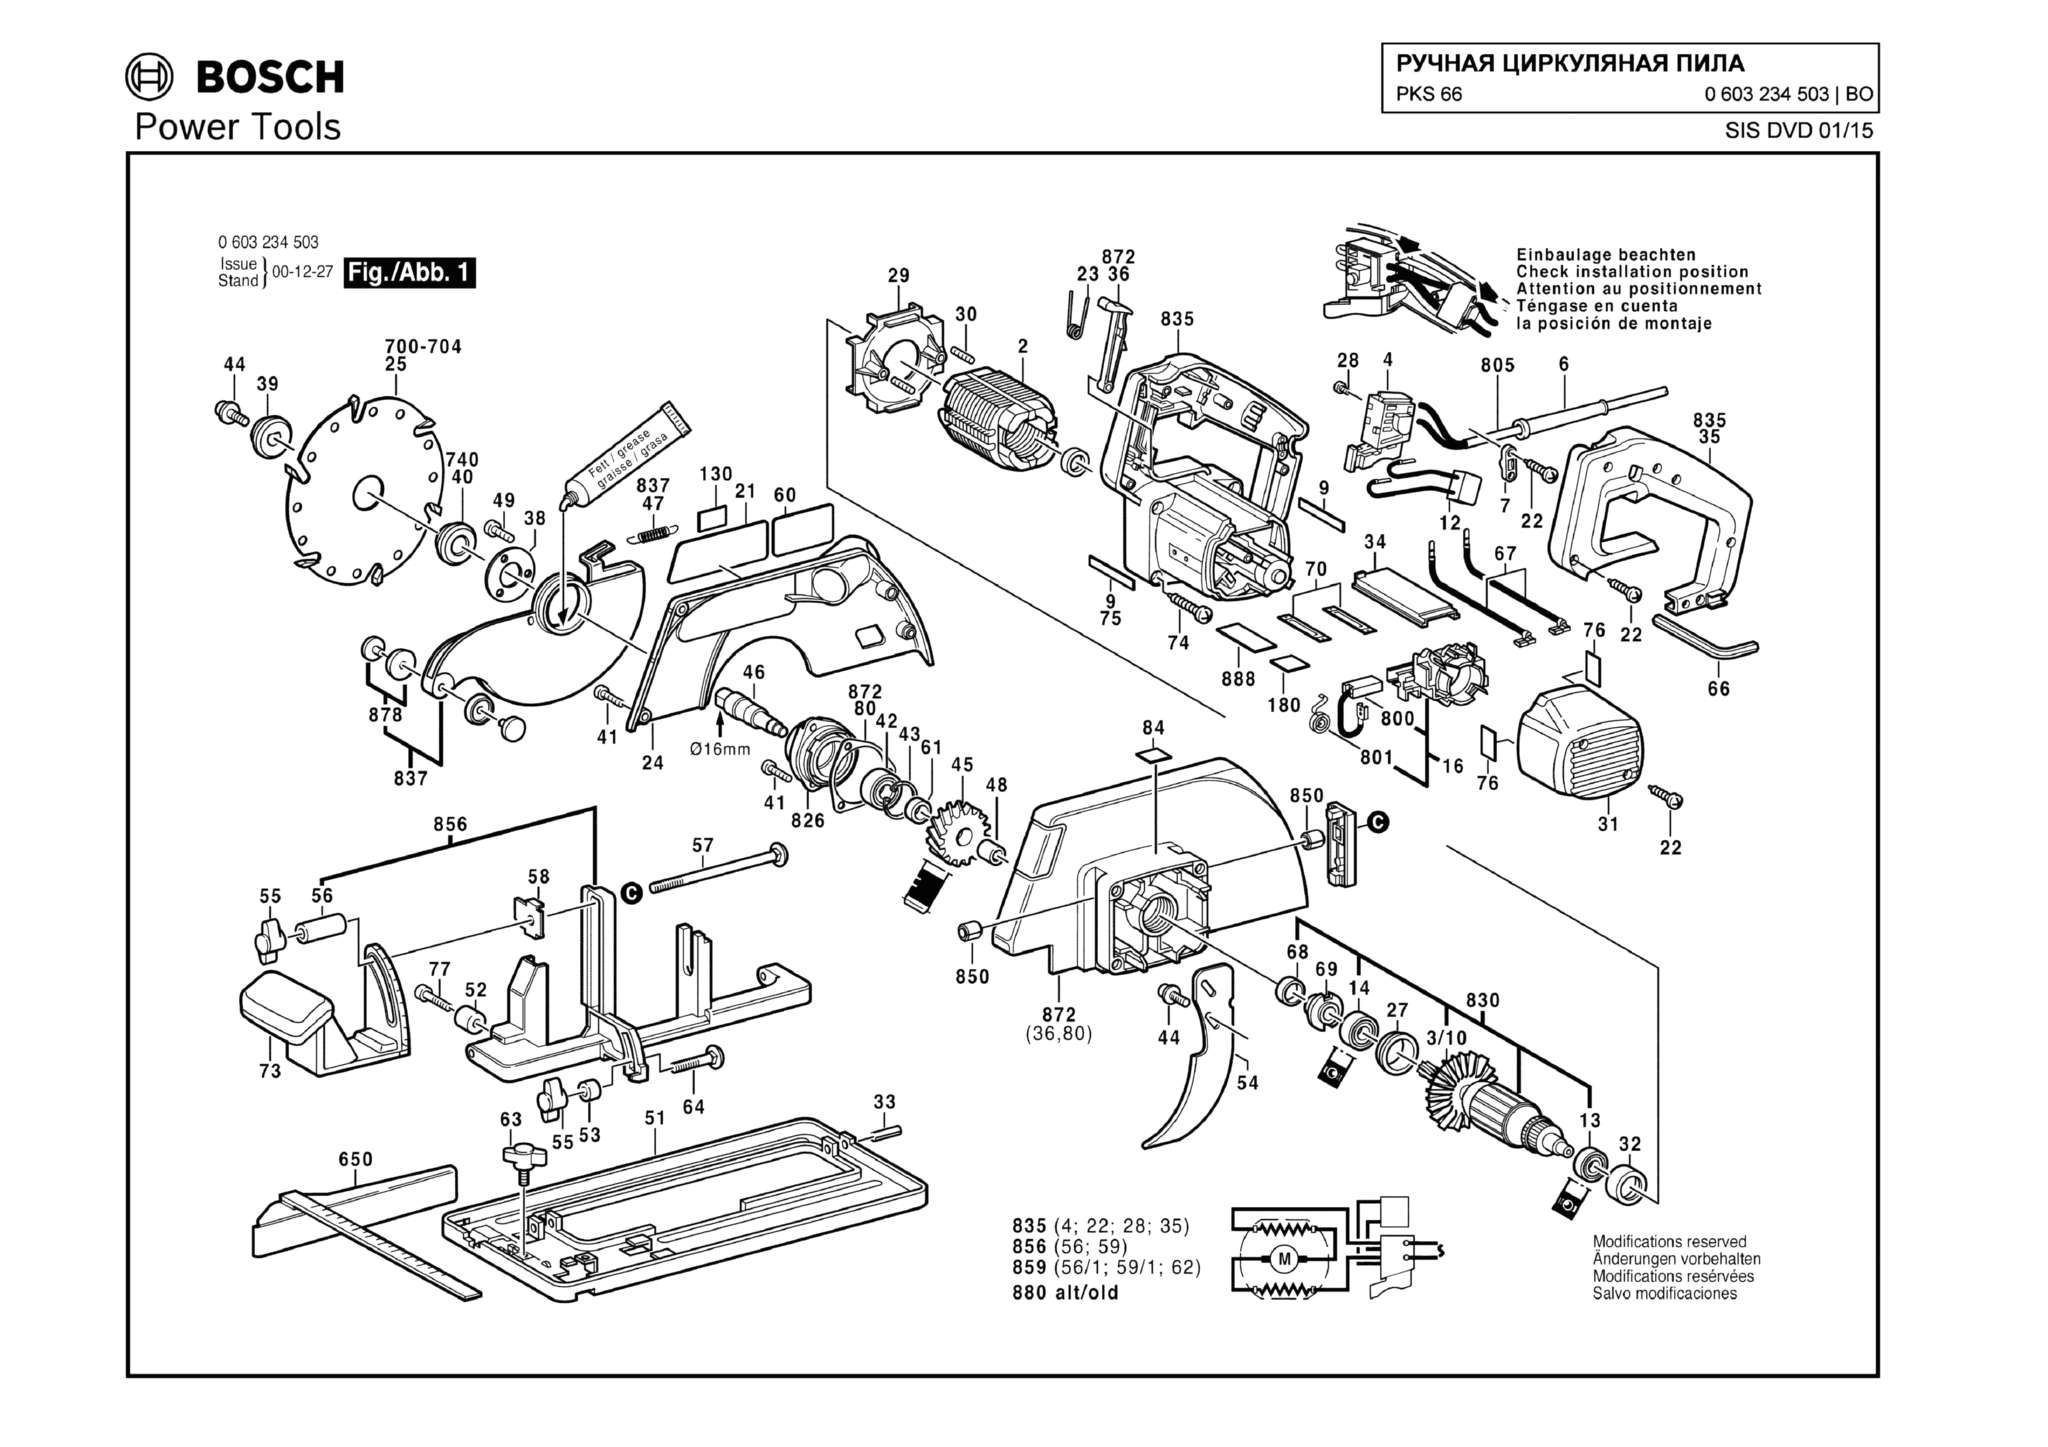 Запчасти, схема и деталировка Bosch PKS 66 (ТИП 0603234503)